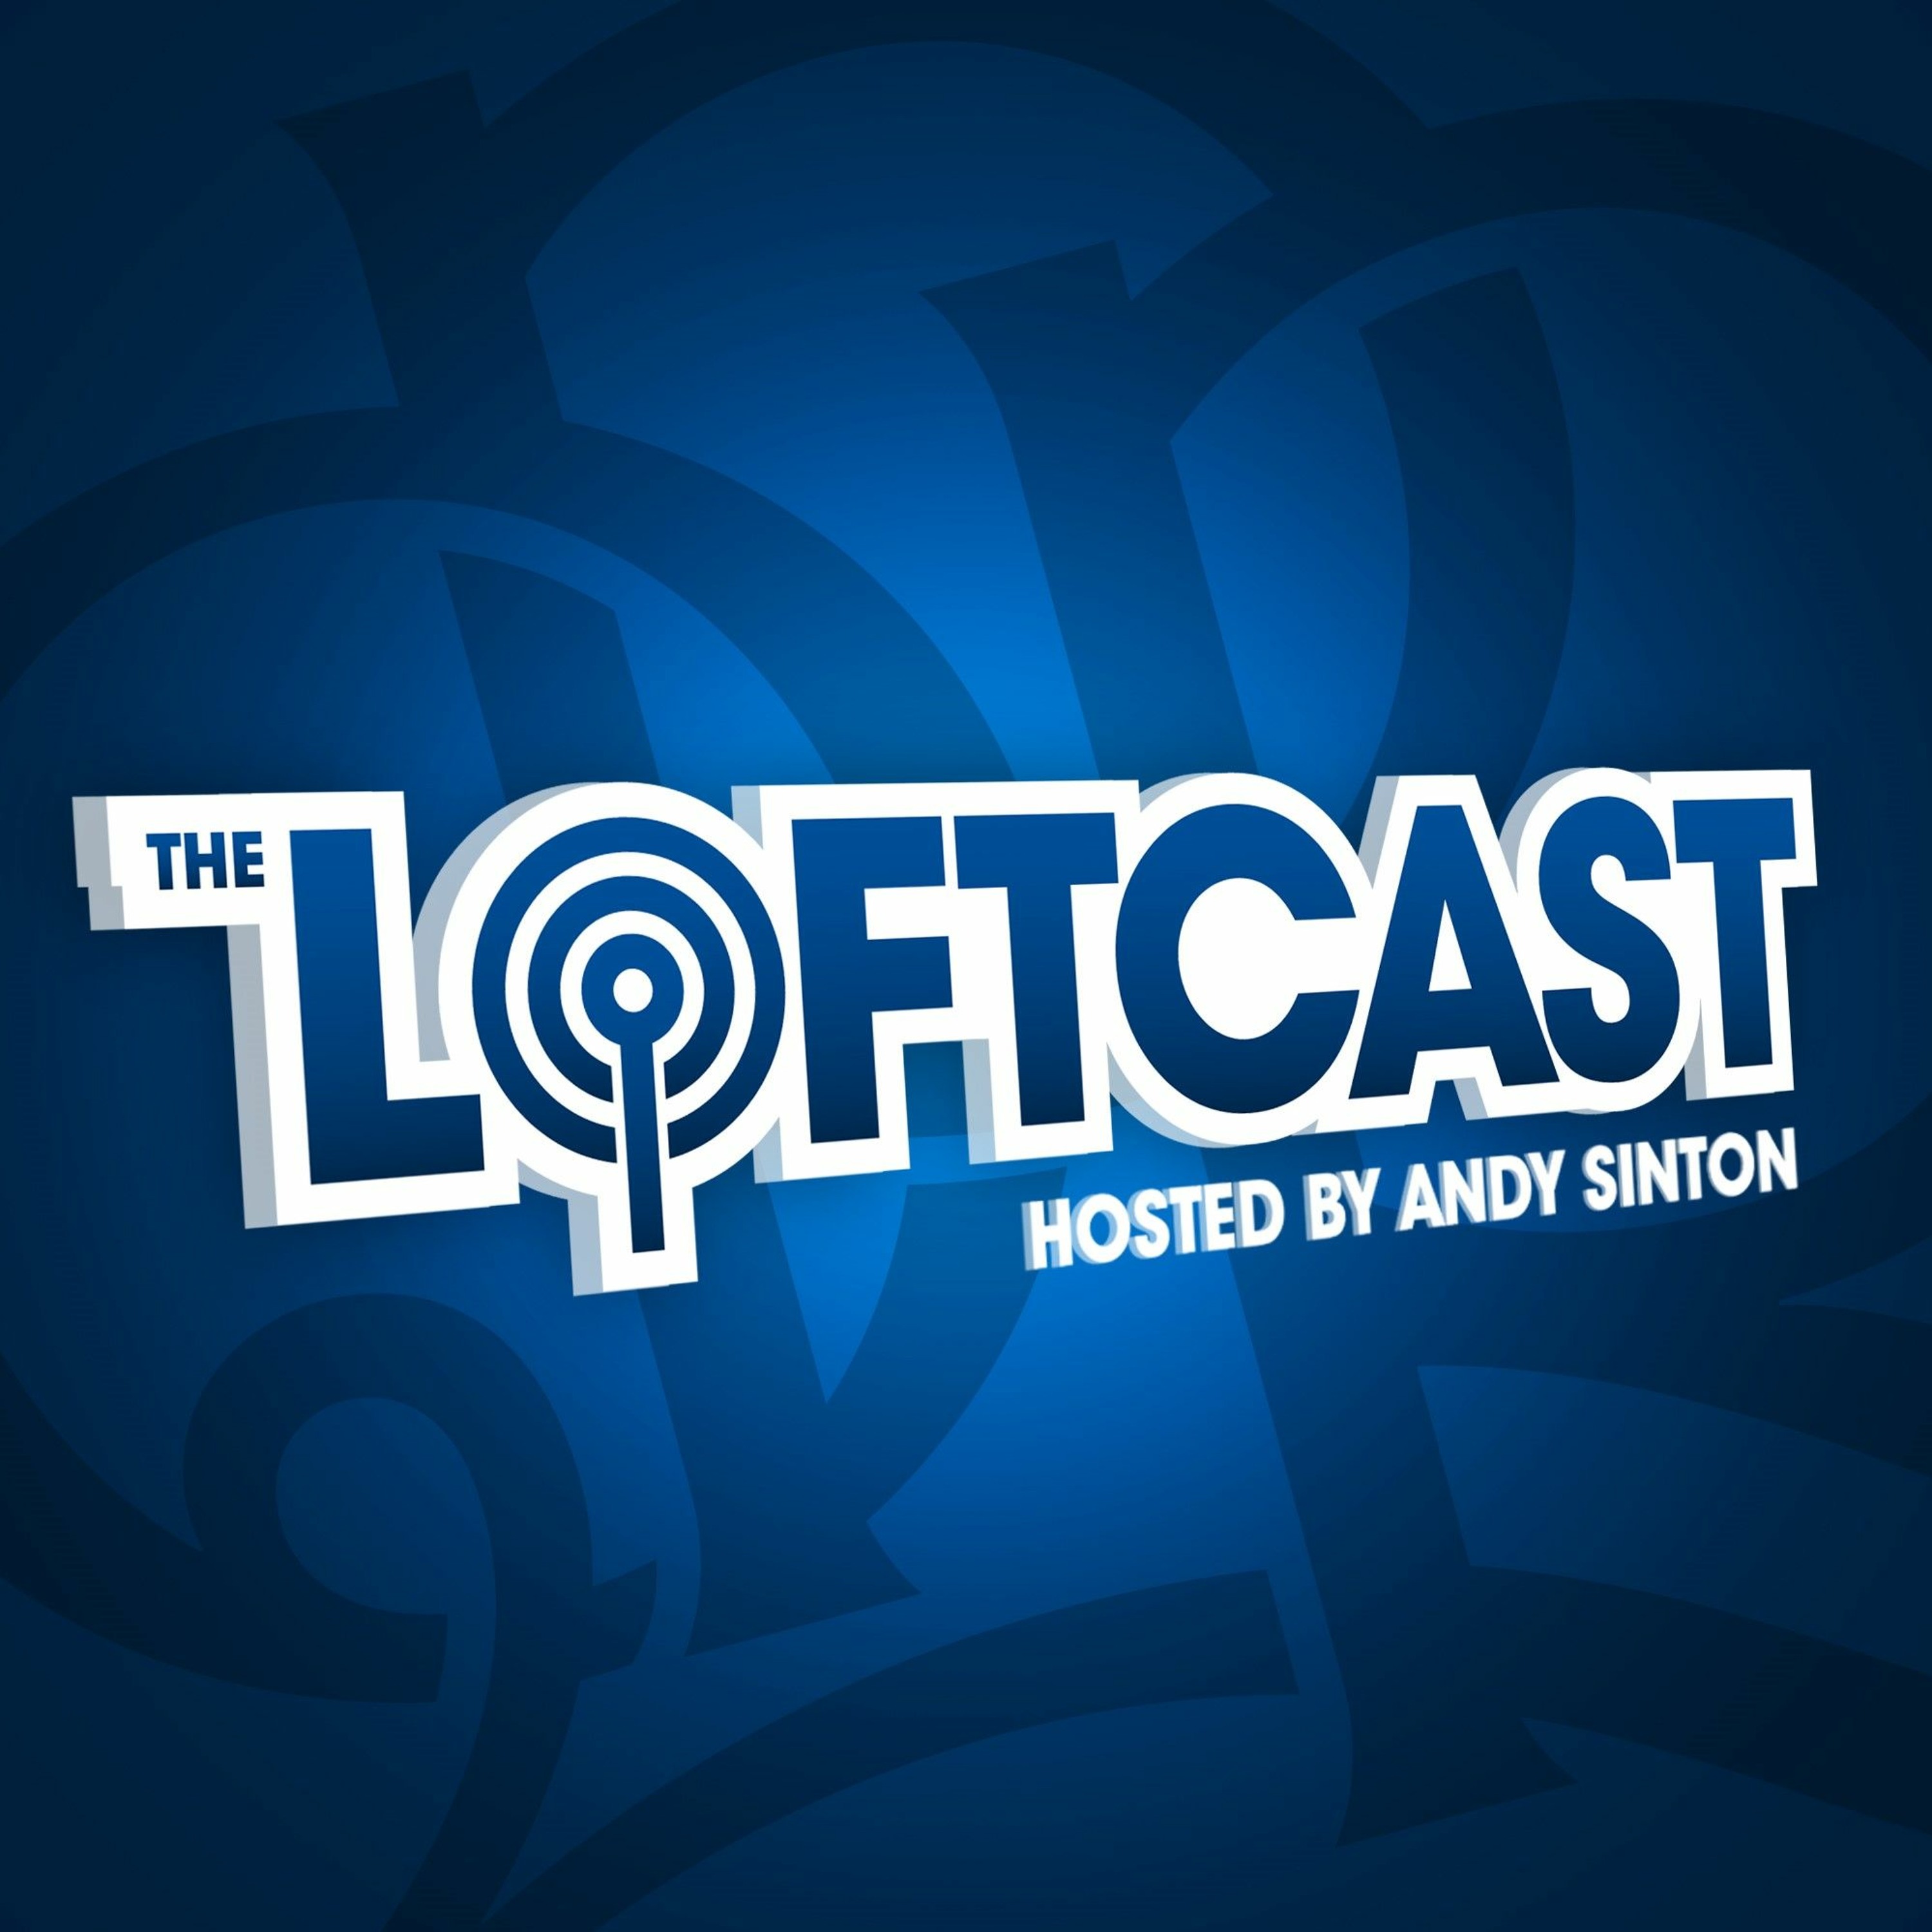 The Loftcast: Tom Carroll's ready